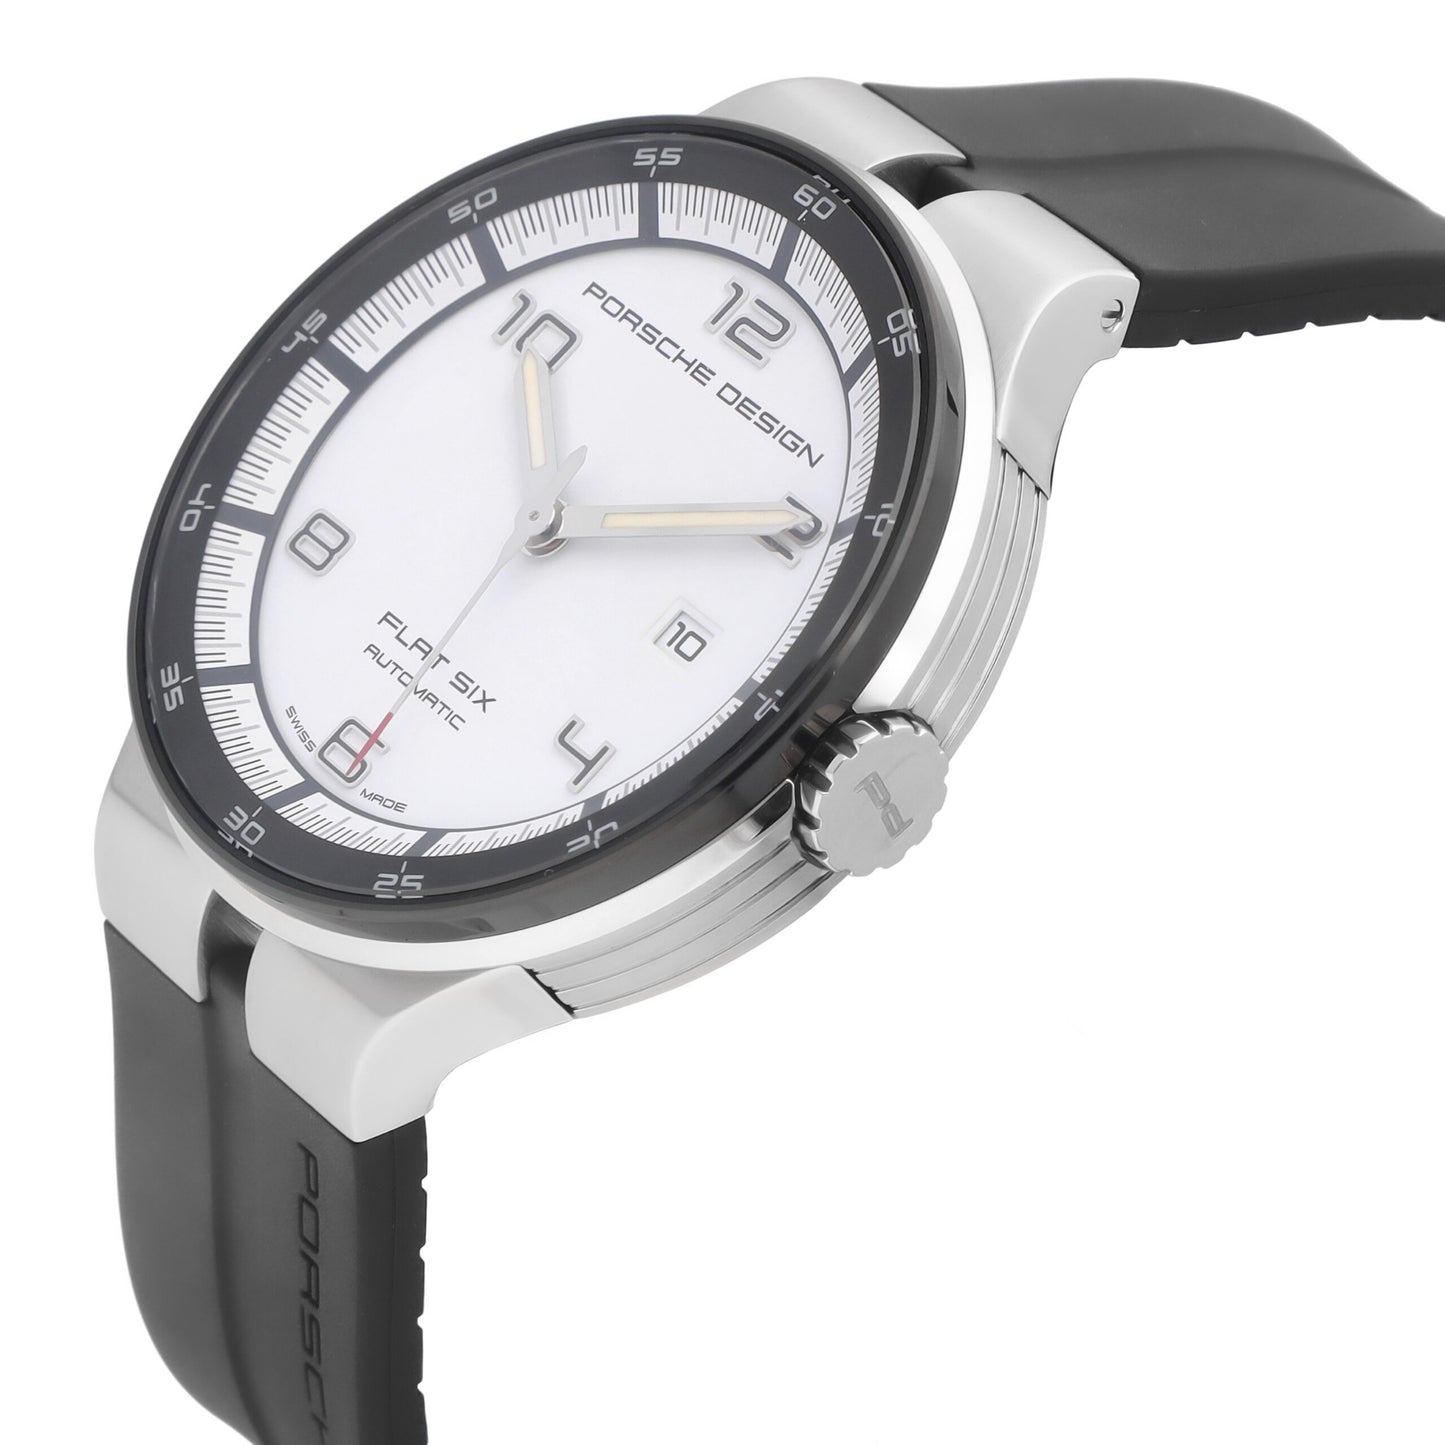 Porsche Design Flat Six 44mm Automatic White Dial Men’s Watch P.635042641254